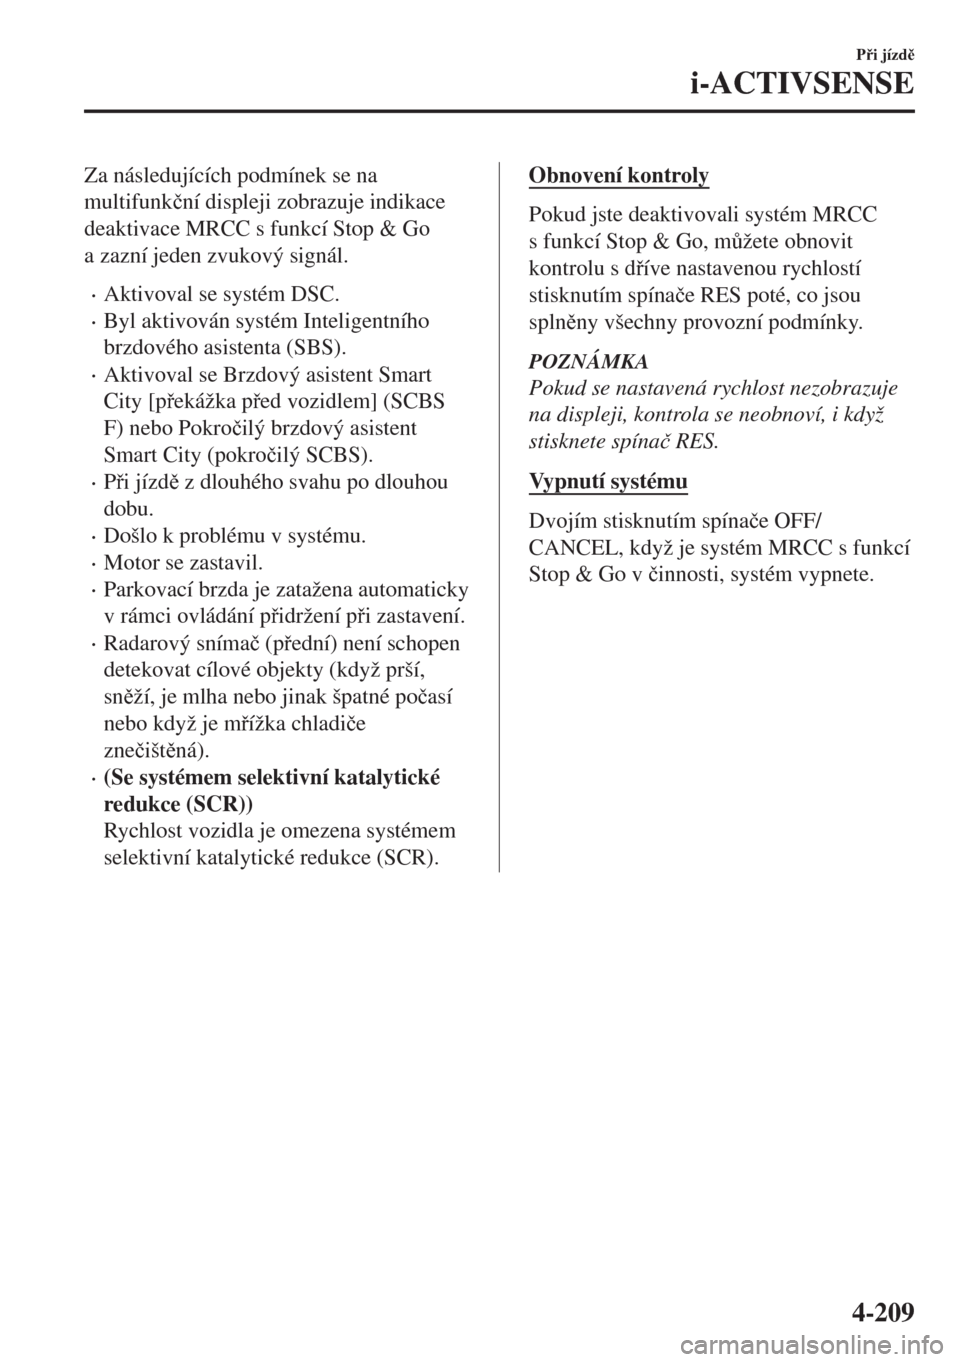 MAZDA MODEL 6 2018  Návod k obsluze (in Czech) Za následujících podmínek se na
multifunk�þní displeji zobrazuje indikace
deaktivace MRCC s funkcí Stop & Go
a zazní jeden zvukový signál.
•Aktivoval se systém DSC.
•Byl aktivován syst